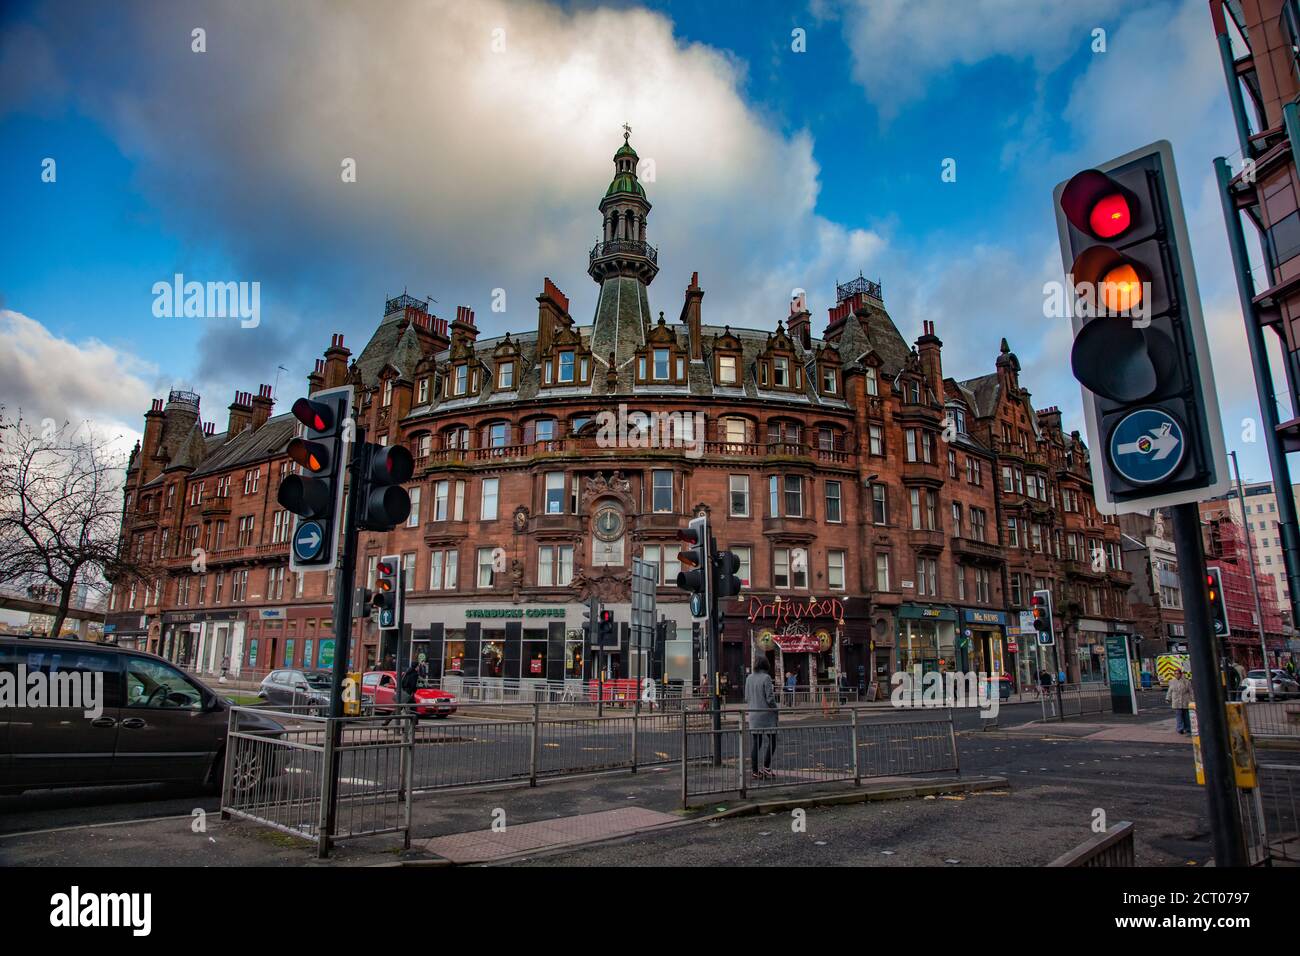 Glasgow / Ecosse - novembre 15 2013 : chute dans la ville. Bâtiment dans le centre-ville de Glasgow, piétons, voitures et feux de circulation. Rue commerciale. Ciel bleu, nuages. Banque D'Images